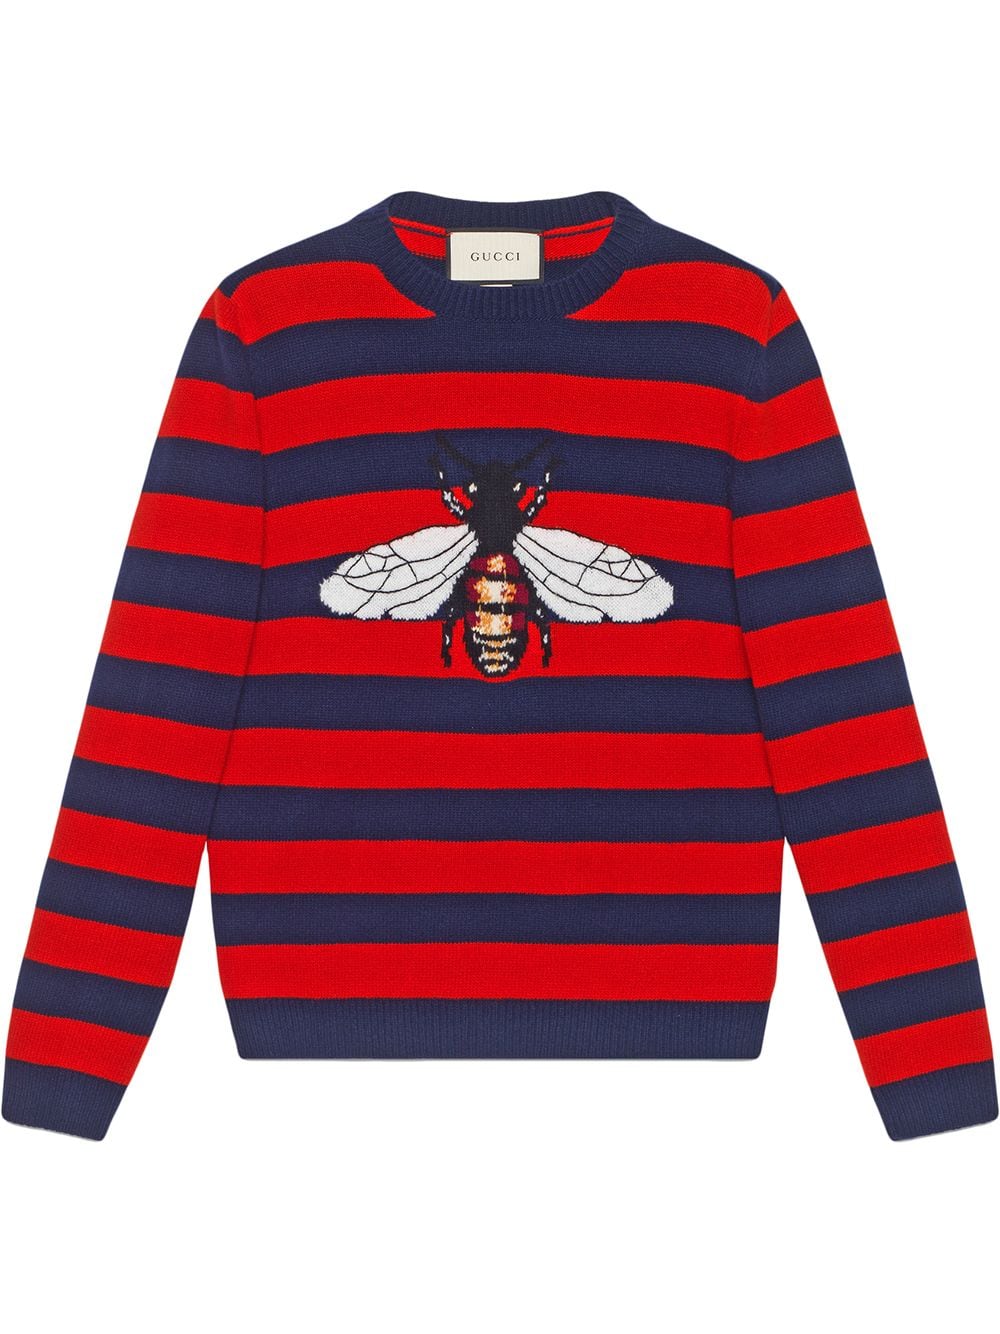 фото Gucci полосатый свитер с пчелой